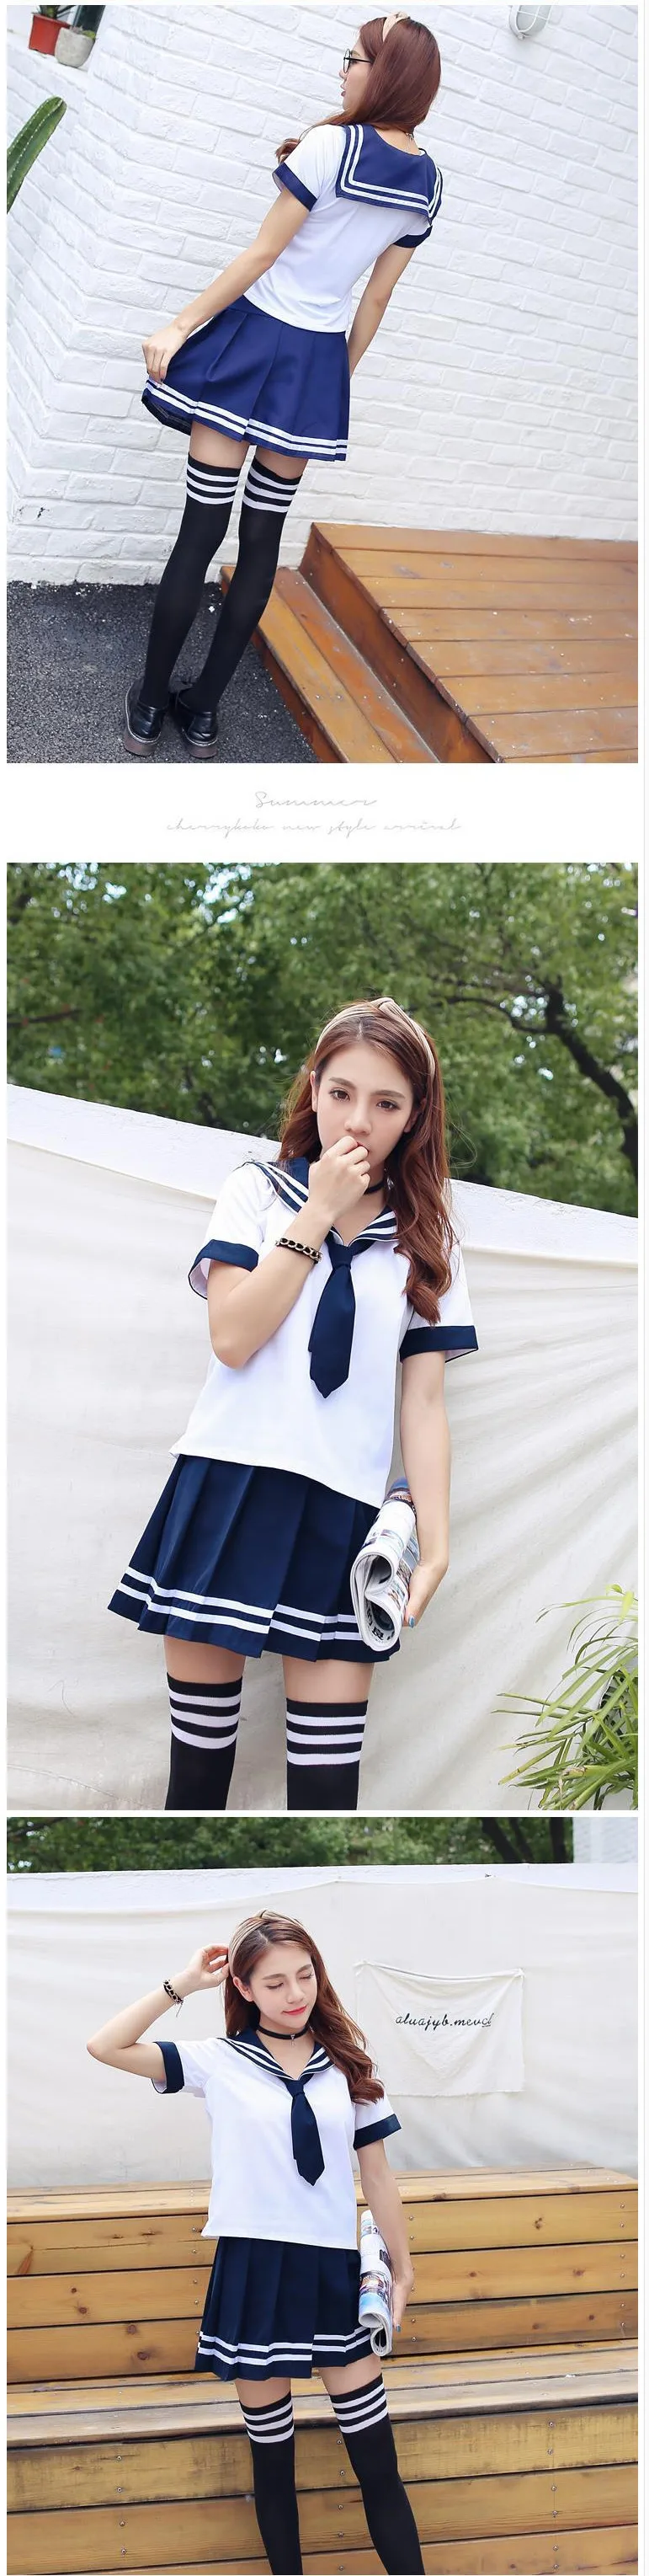 Япония Школьная Униформа аниме горничной юбка Сейлор равномерное платье в стиле «Лолита» платье Девушки Япония британский флот Стиль